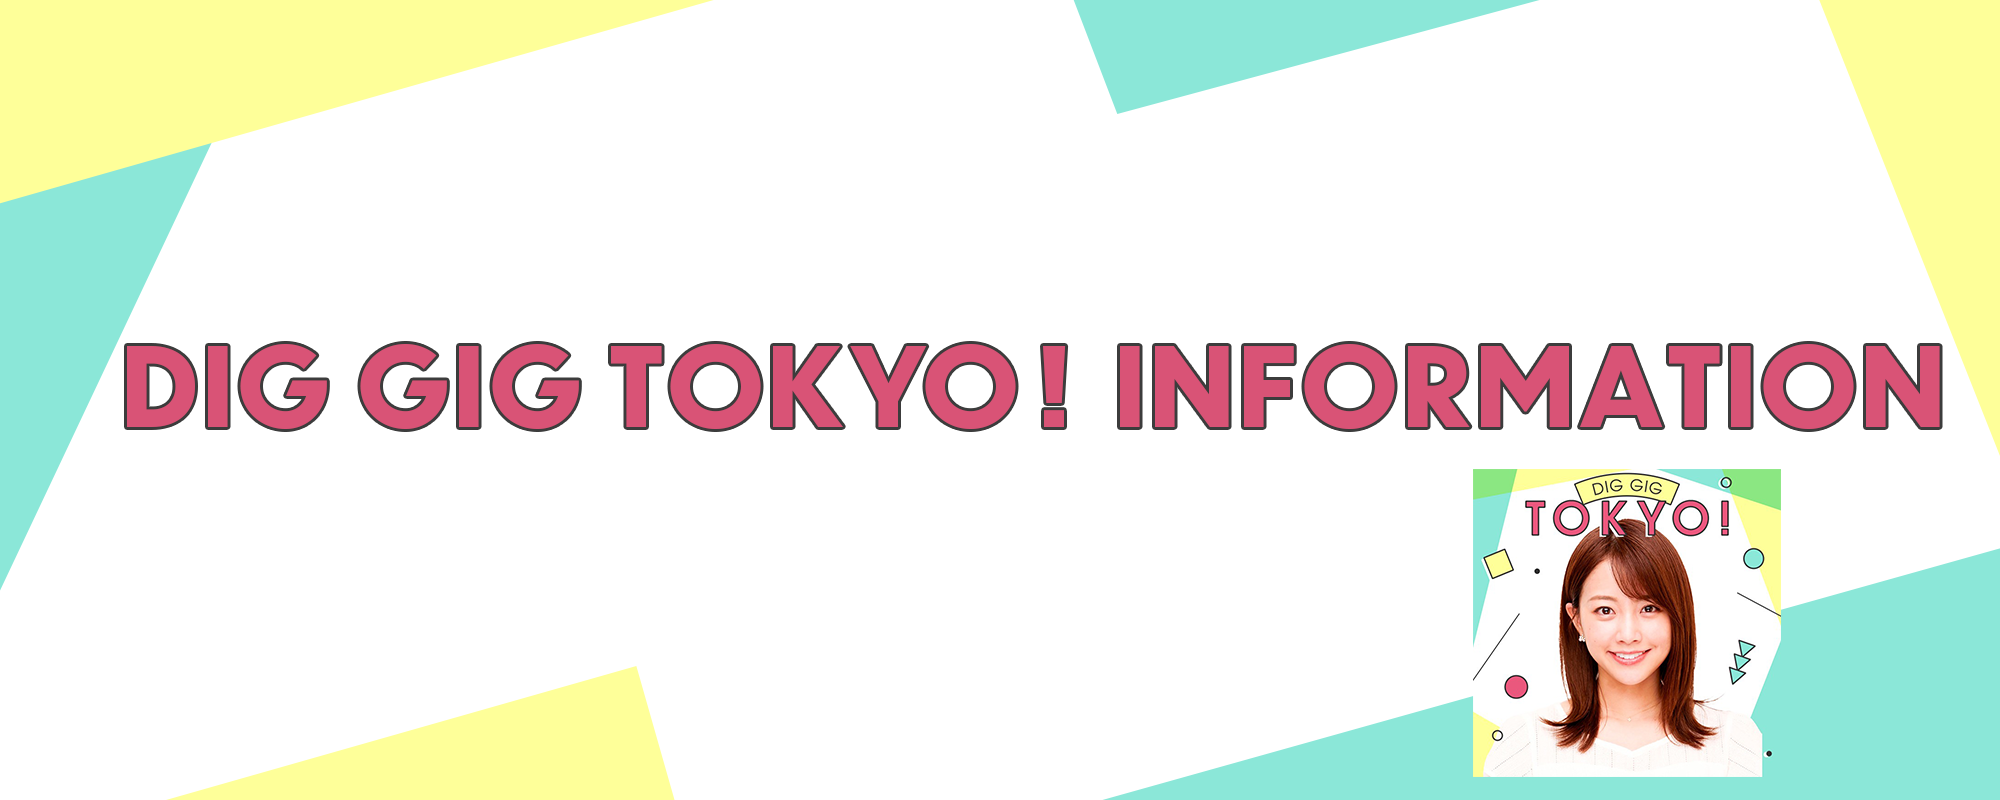 DIG GIG TOKYO! INFORMATION